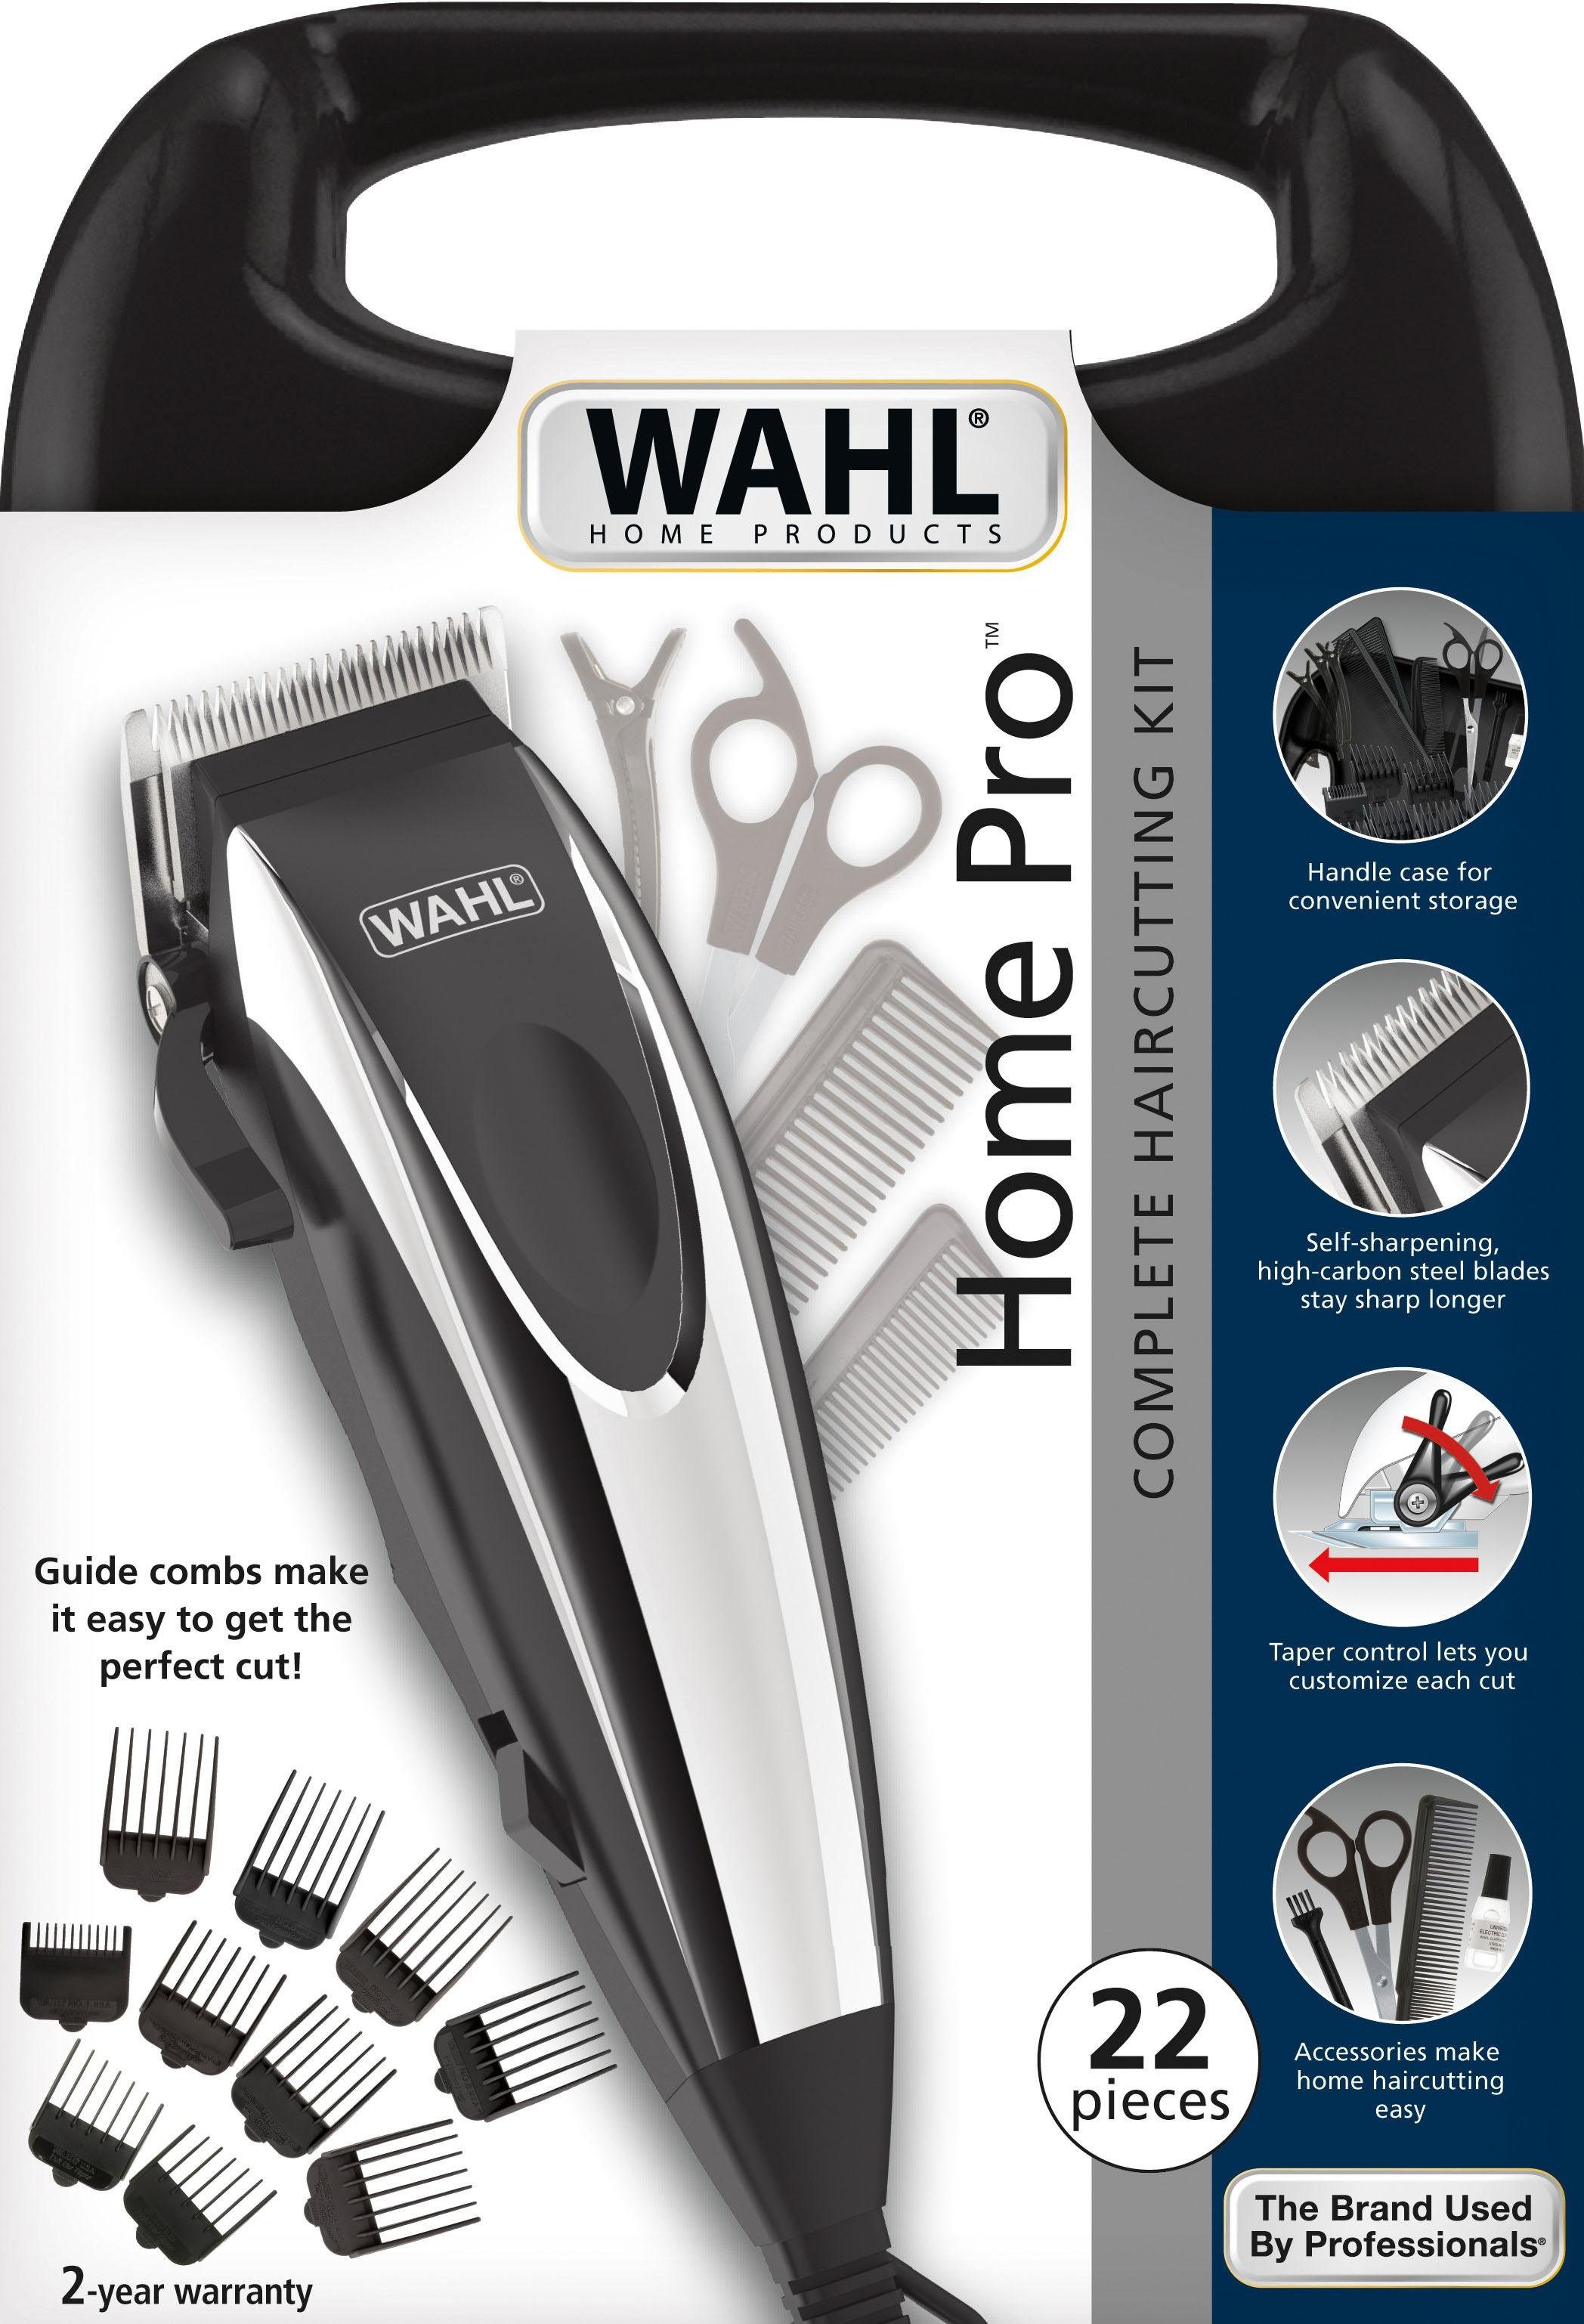 Wahl Haar- und Bartschneider 09243-2616 Pro, Friseur Home Kit komplettes